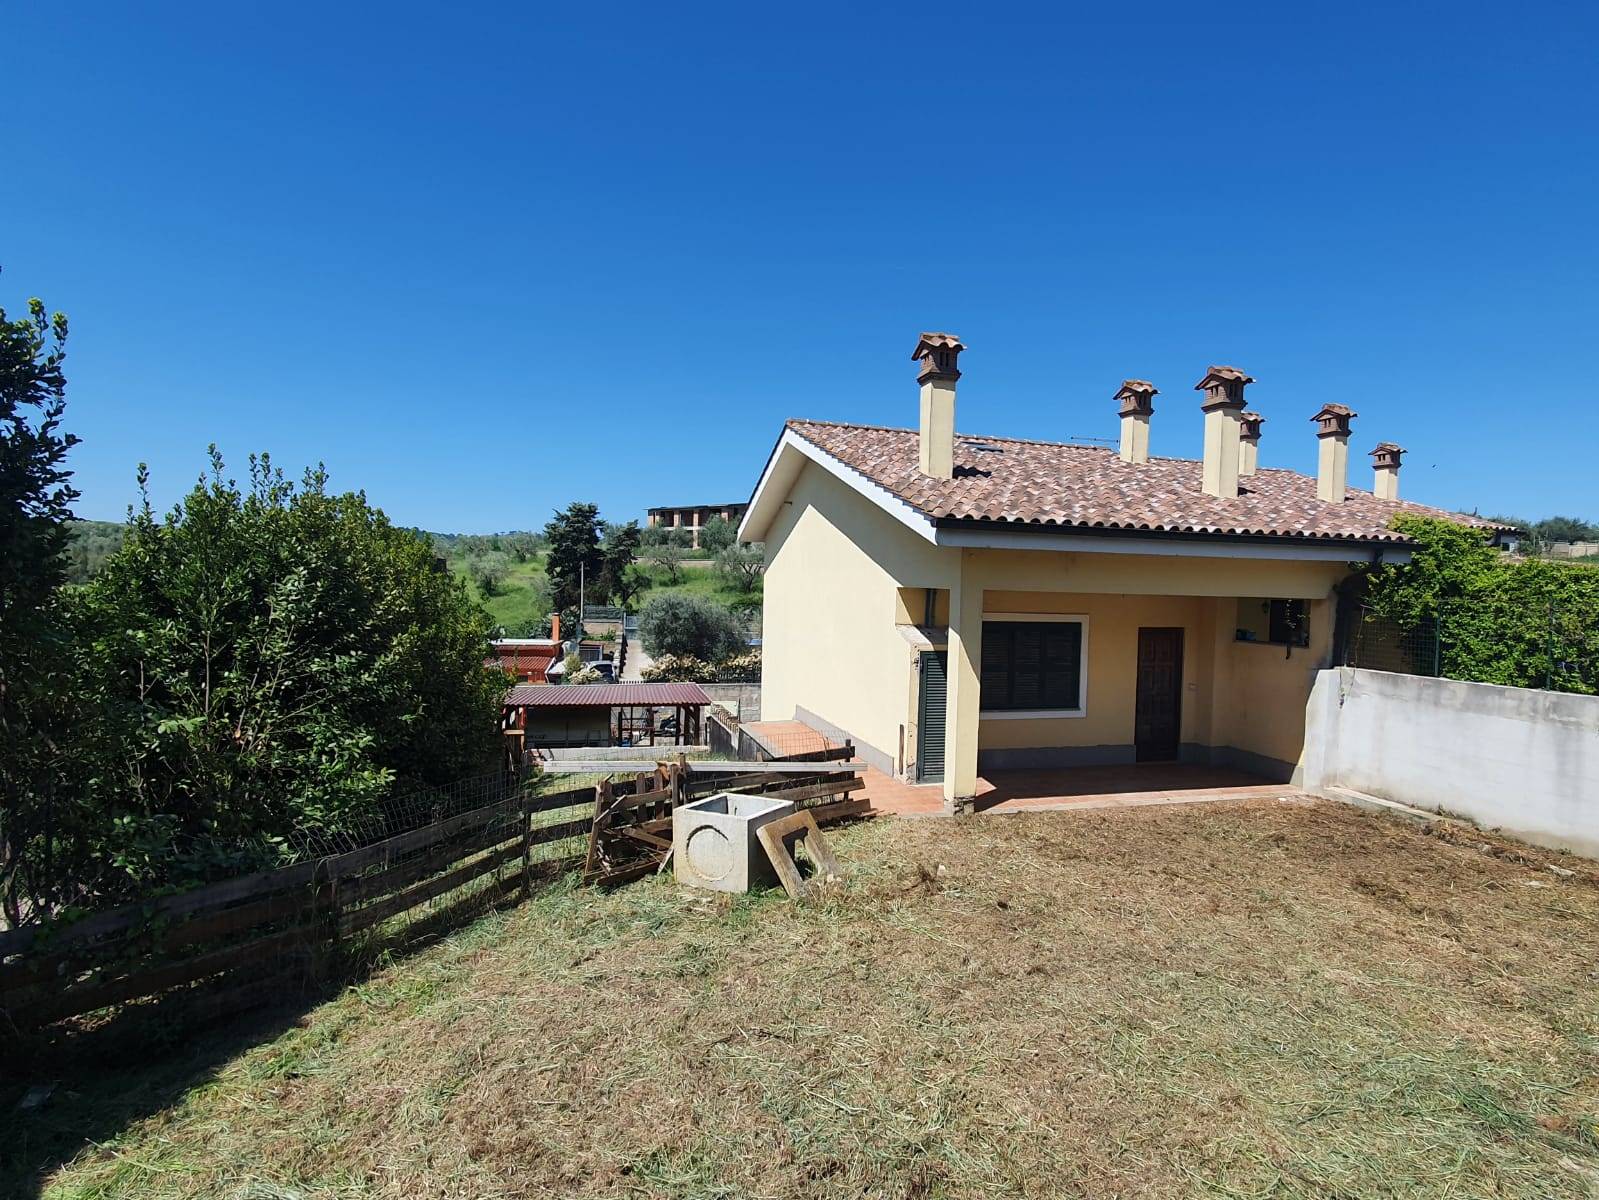 Villa in vendita a Capena, 3 locali, zona Località: SELVOTTA, prezzo € 165.000 | CambioCasa.it